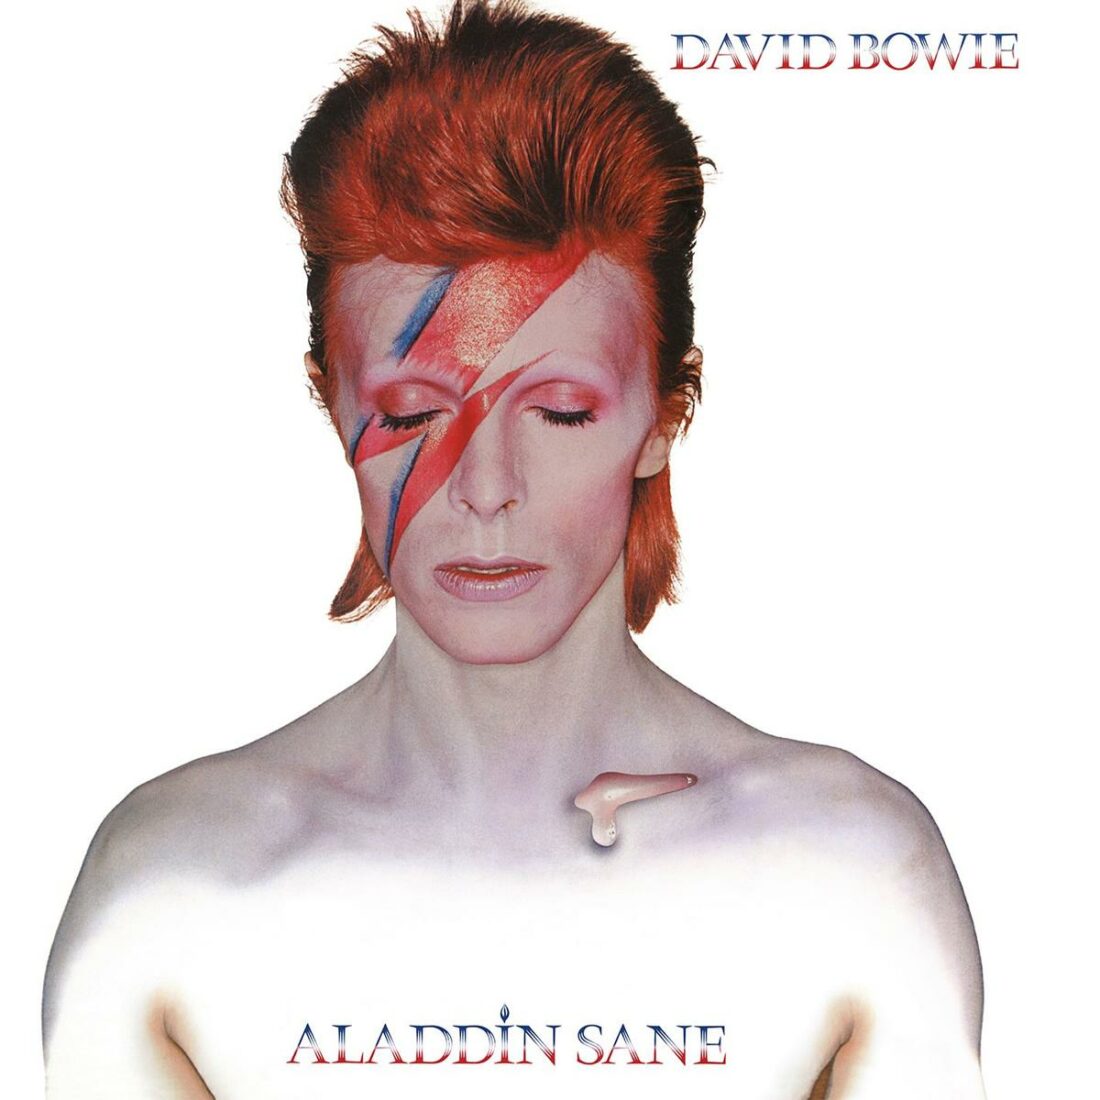 David Bowie, Aladdin Sane. (From: Amazon)